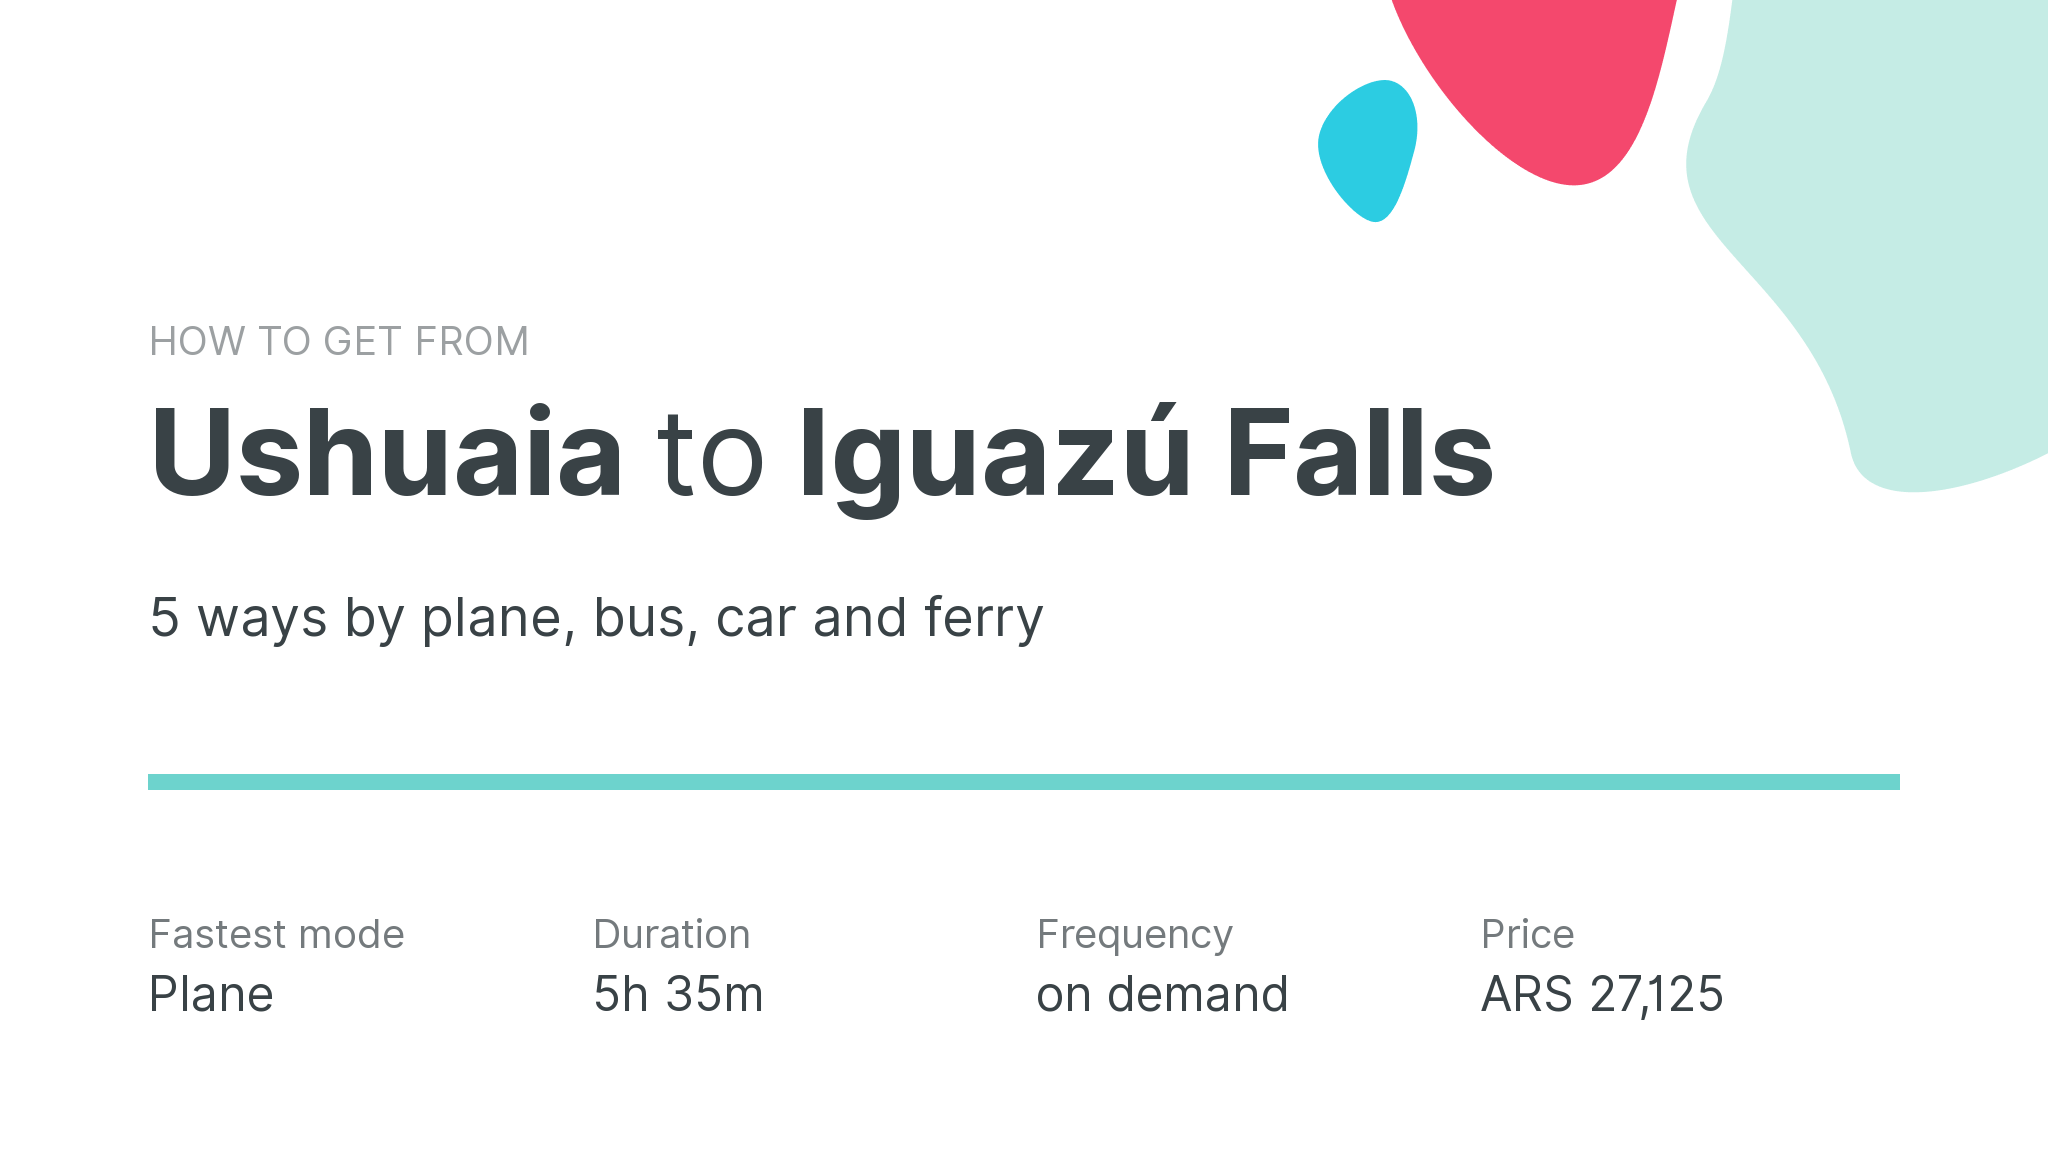 How do I get from Ushuaia to Iguazú Falls